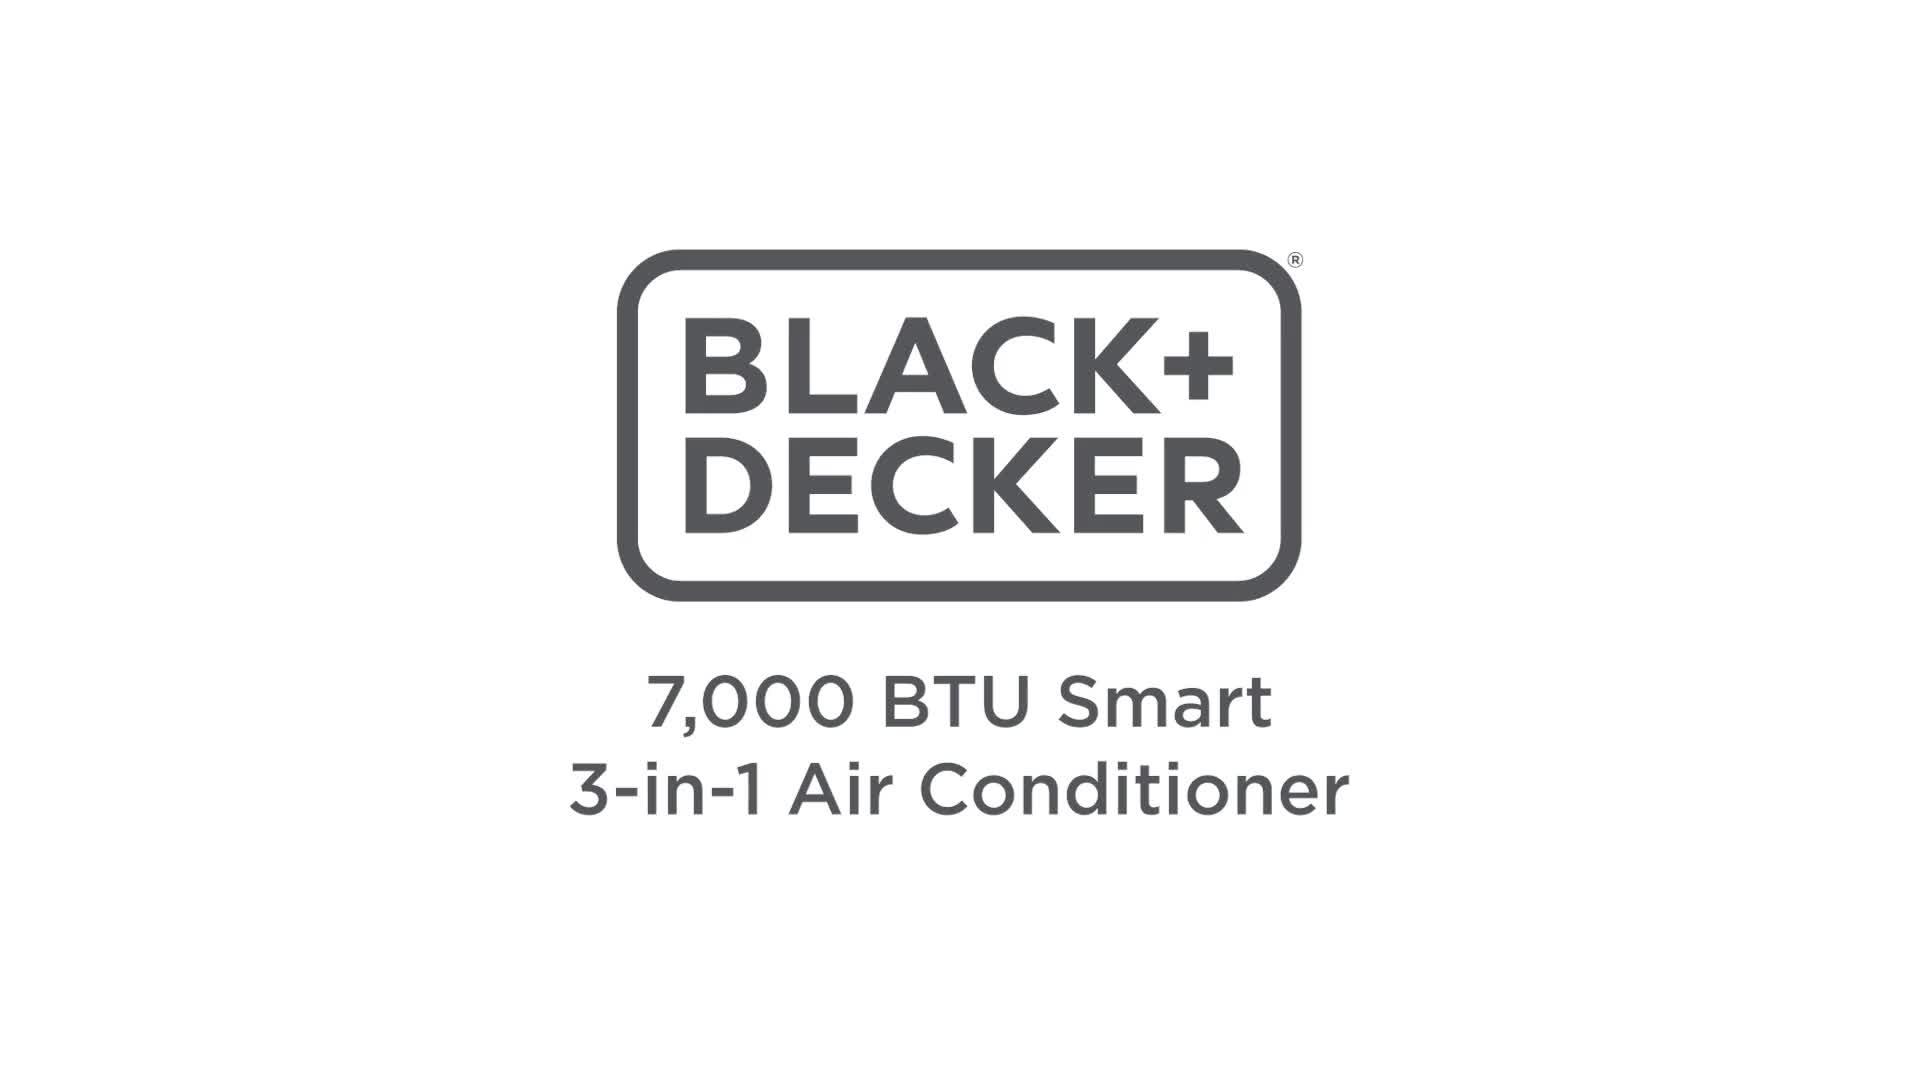 Black & Decker BXAC40024GB Portable 7000 BTU 3-in-1 Smart Air